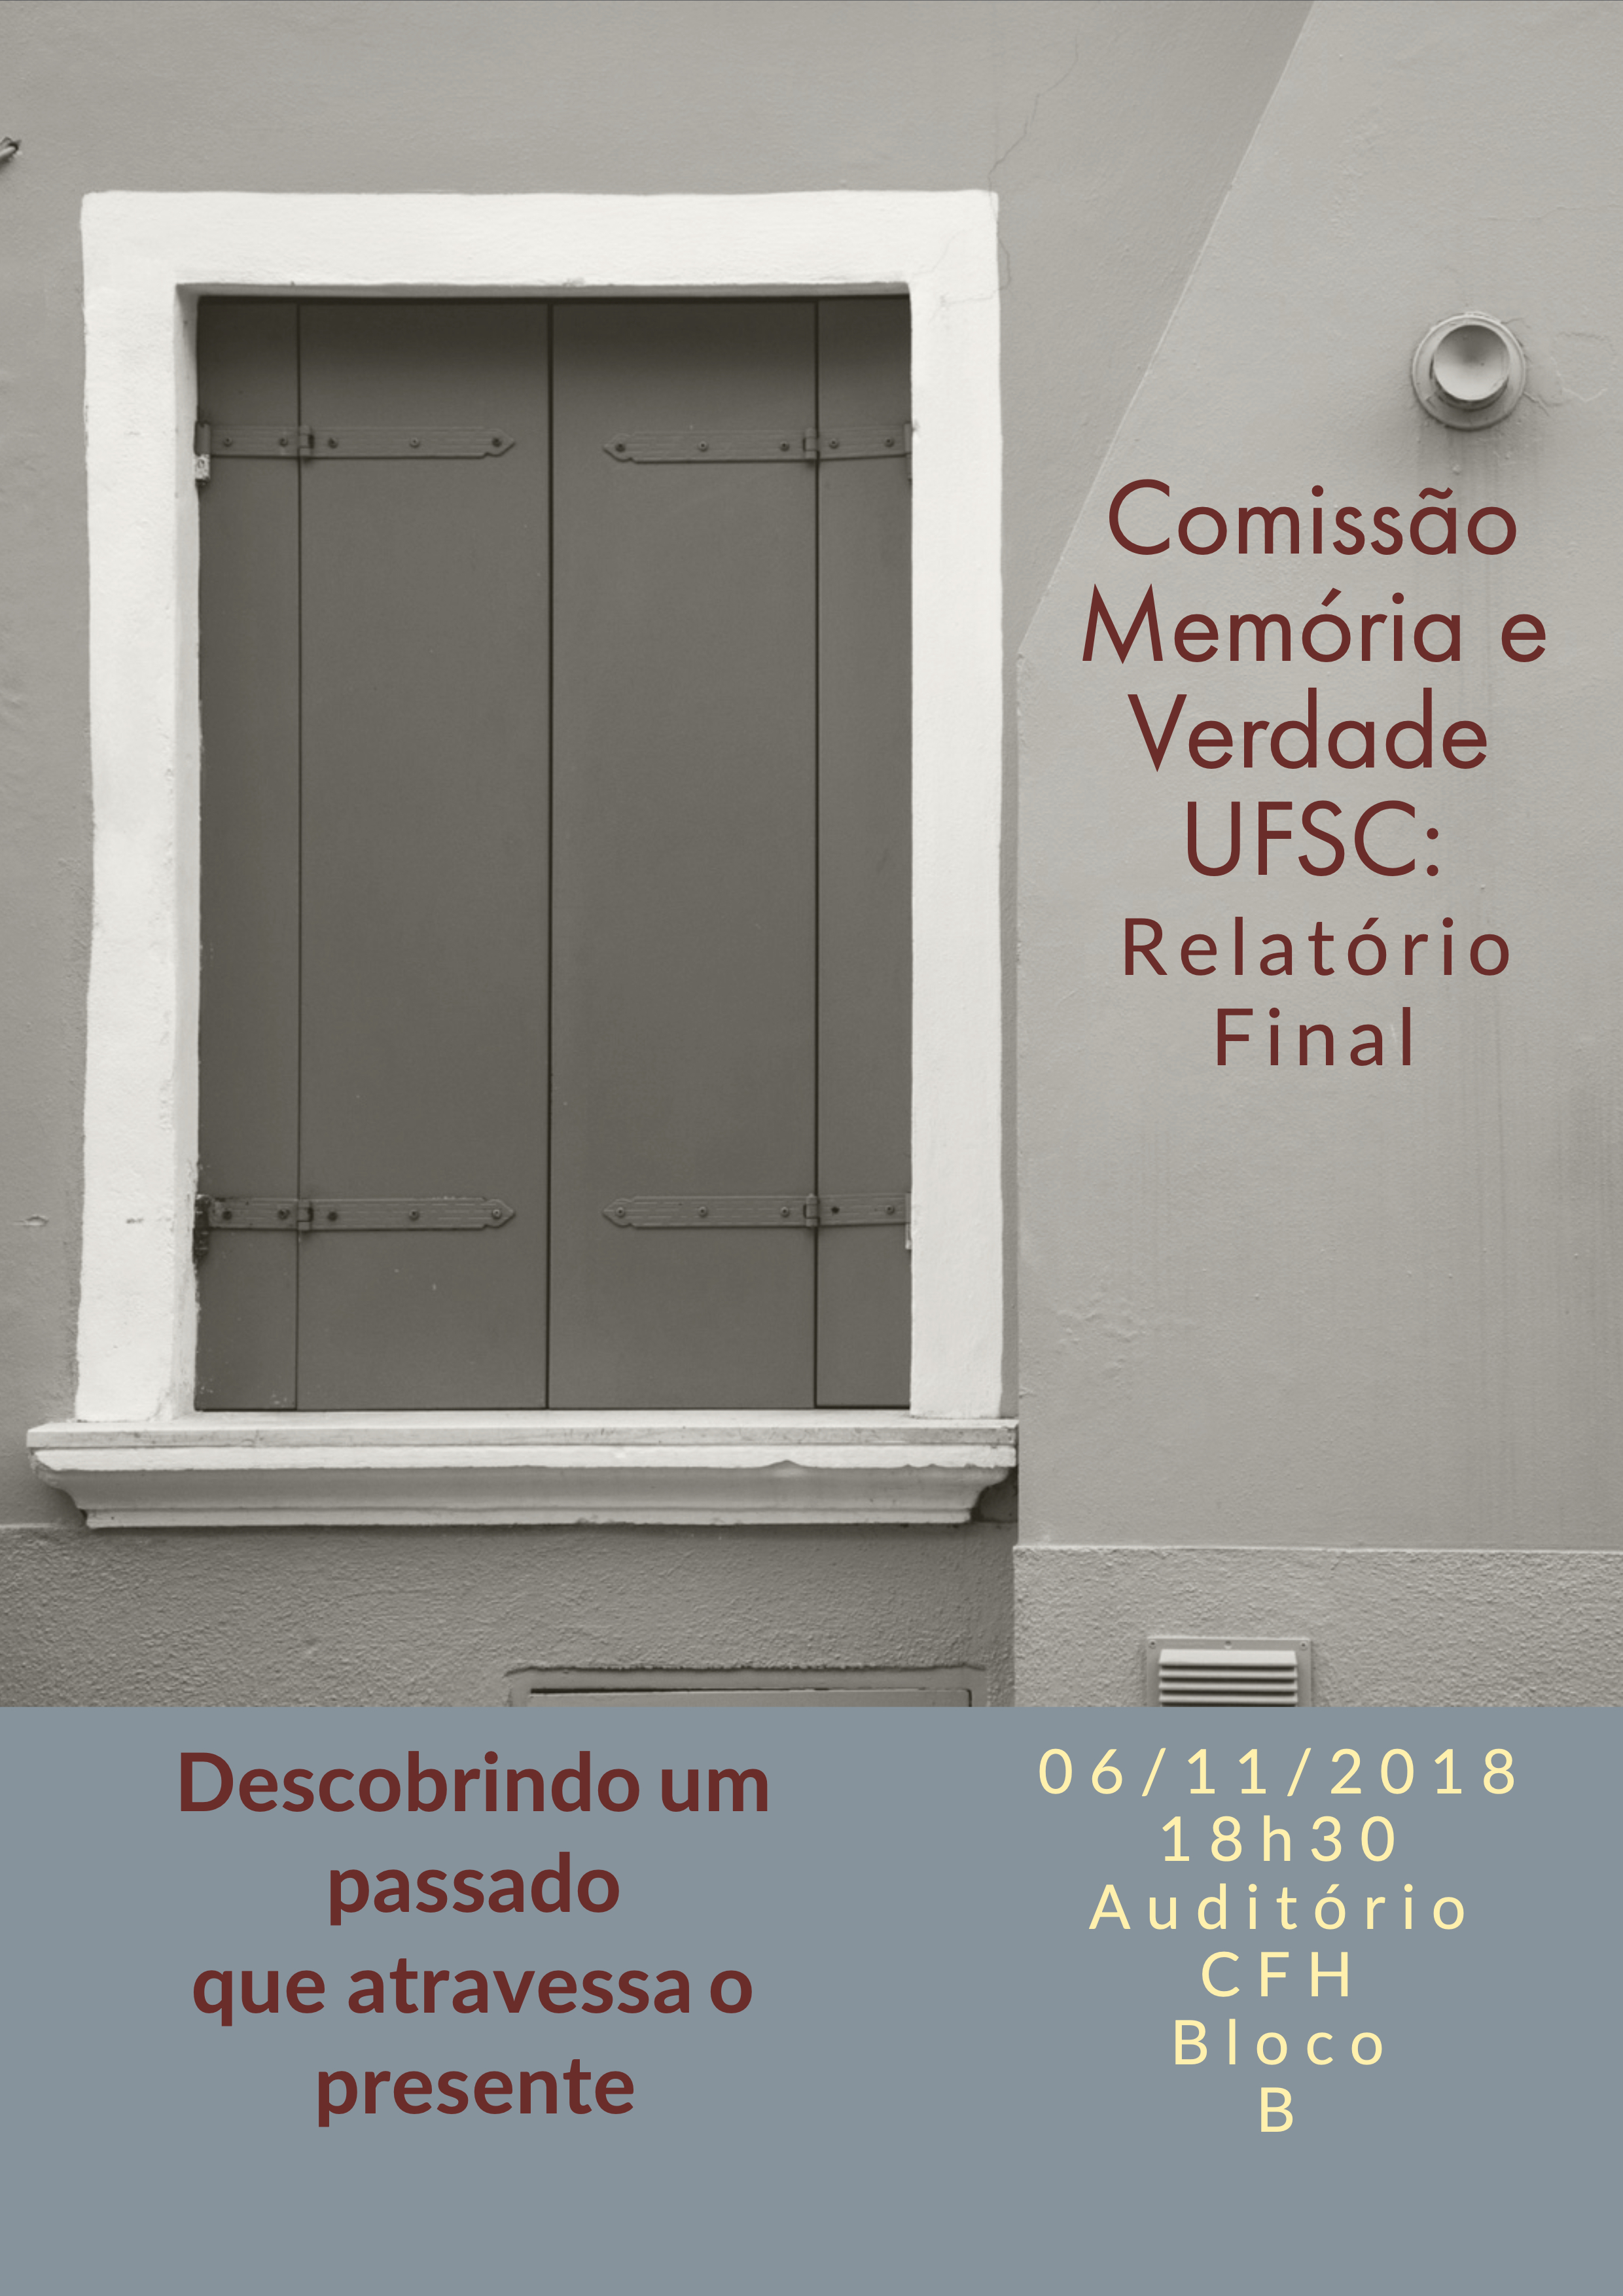 Comissão Memória e Verdade UFSC: Relatório Final